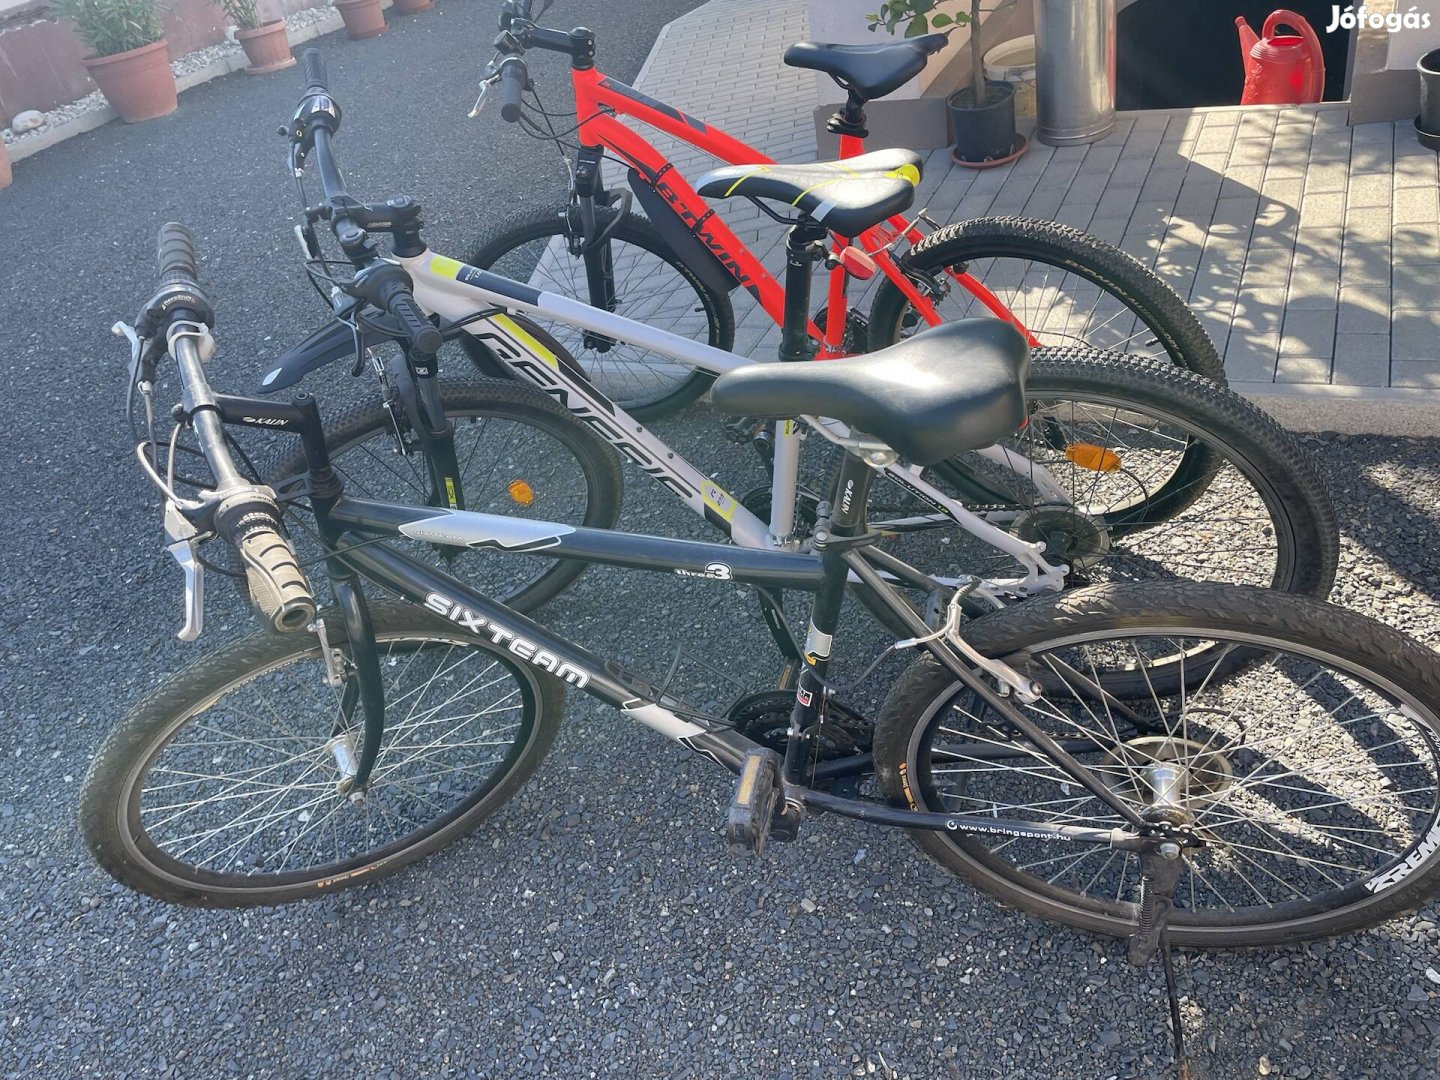 Eladó újszerű állapotban lévő kerékpár.